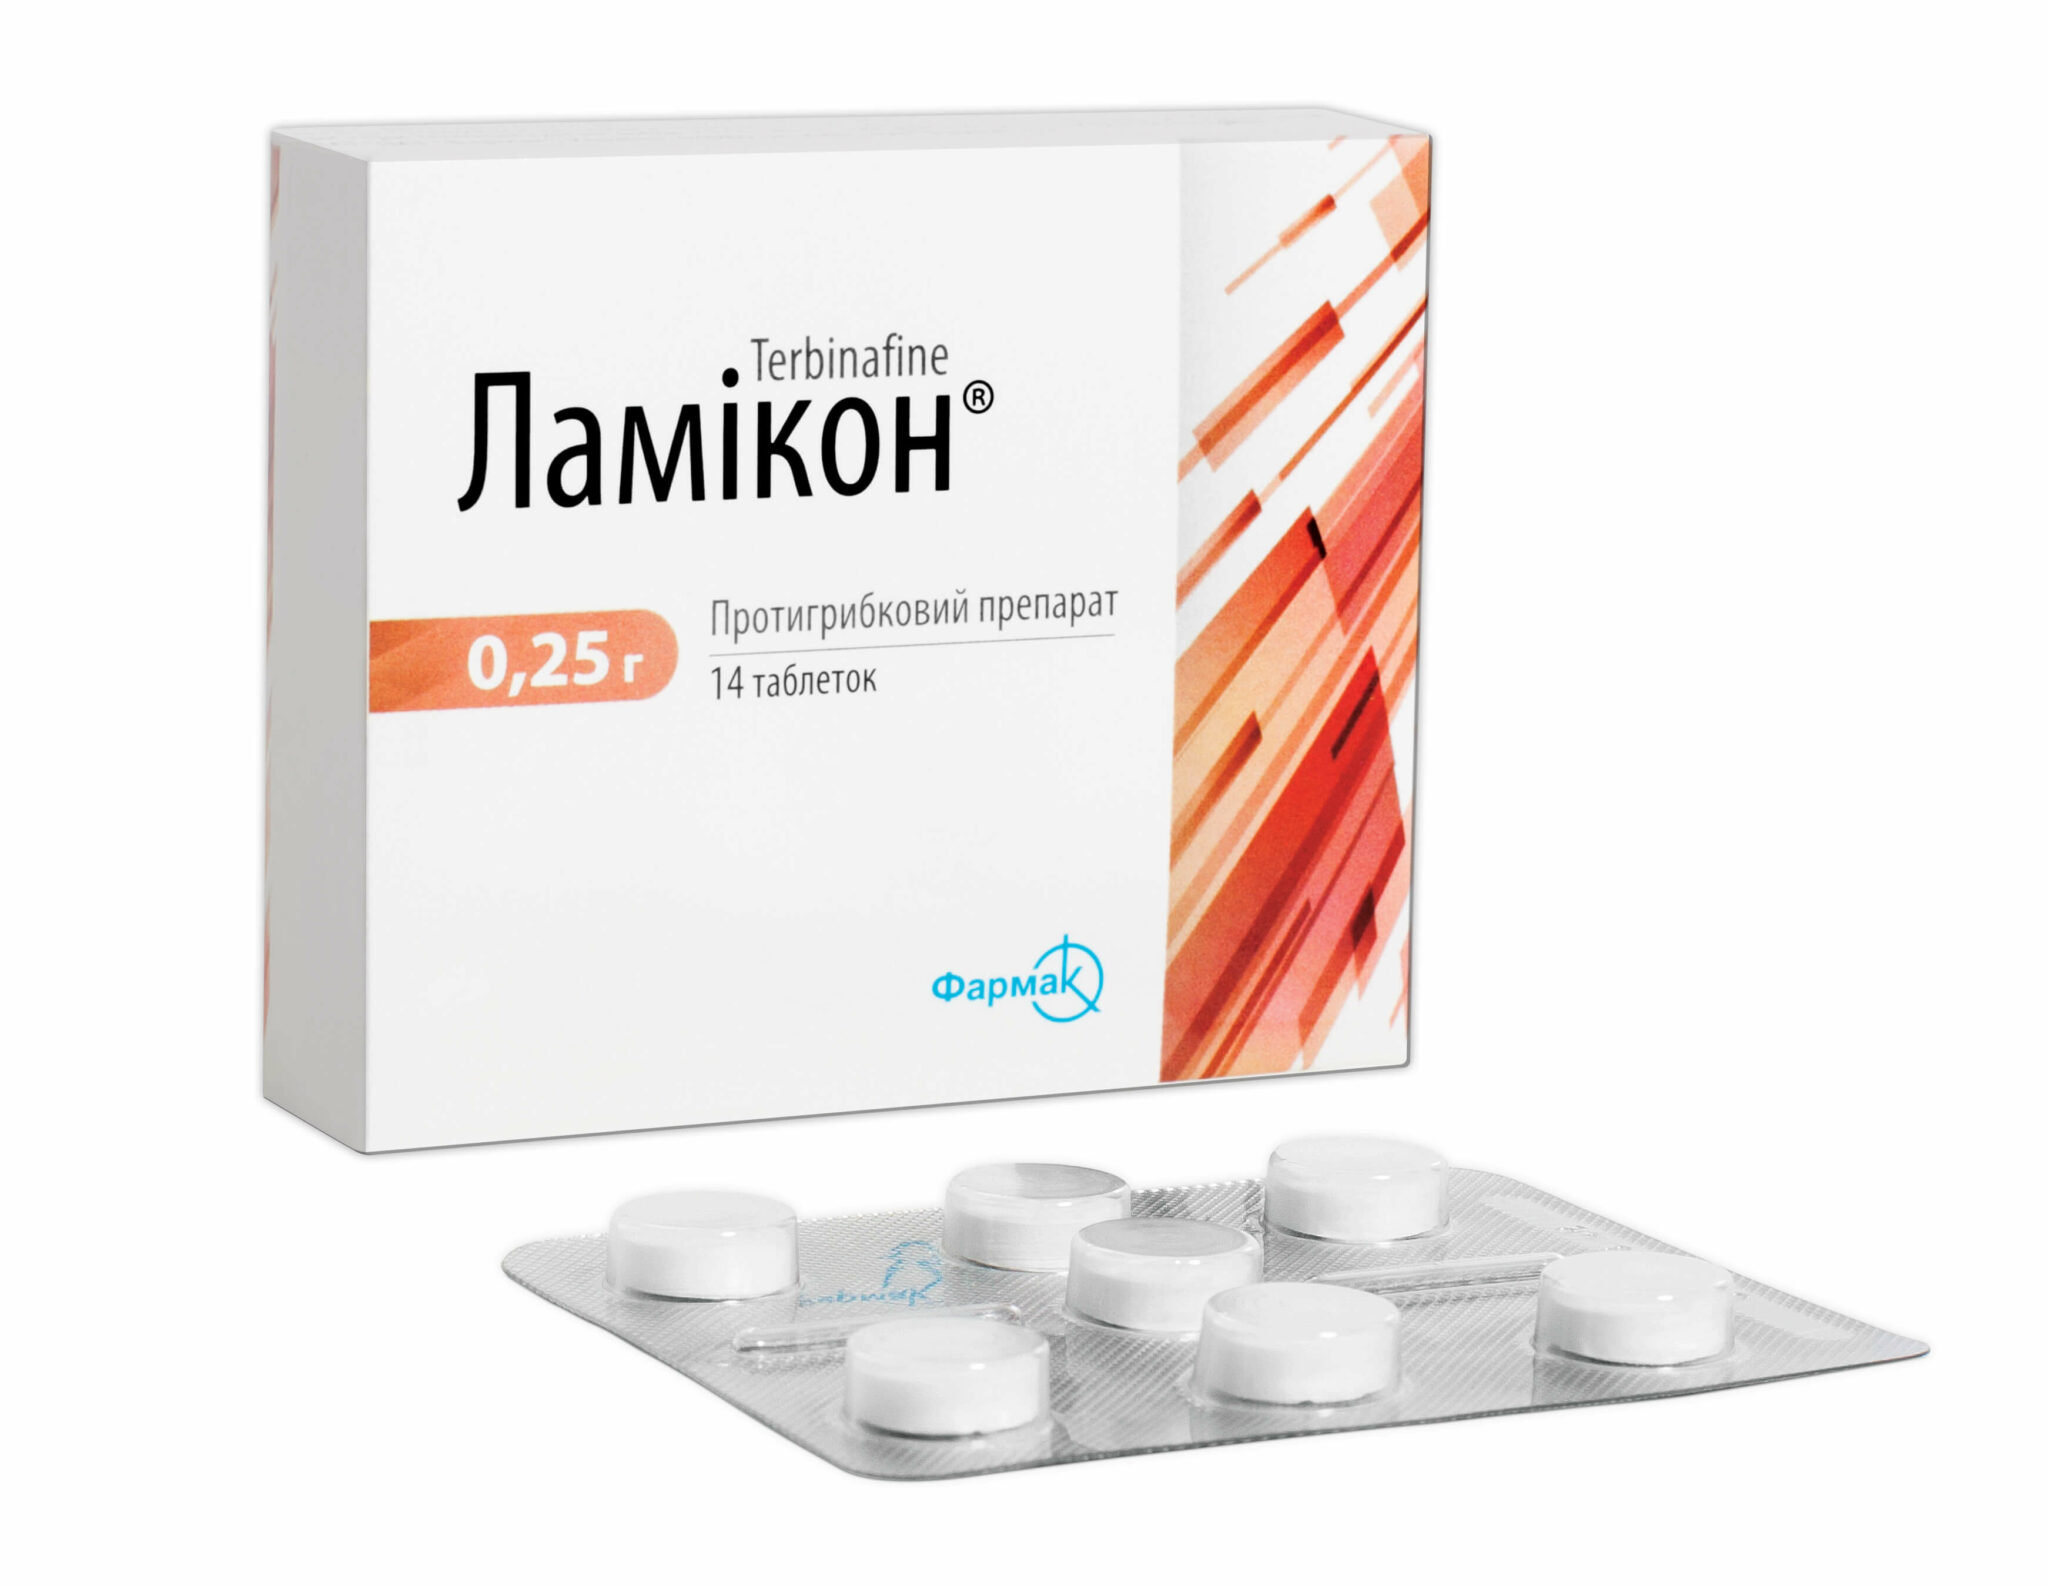 Ламикон (таблетки) применяют для лечения онихомикоза, вызванного .